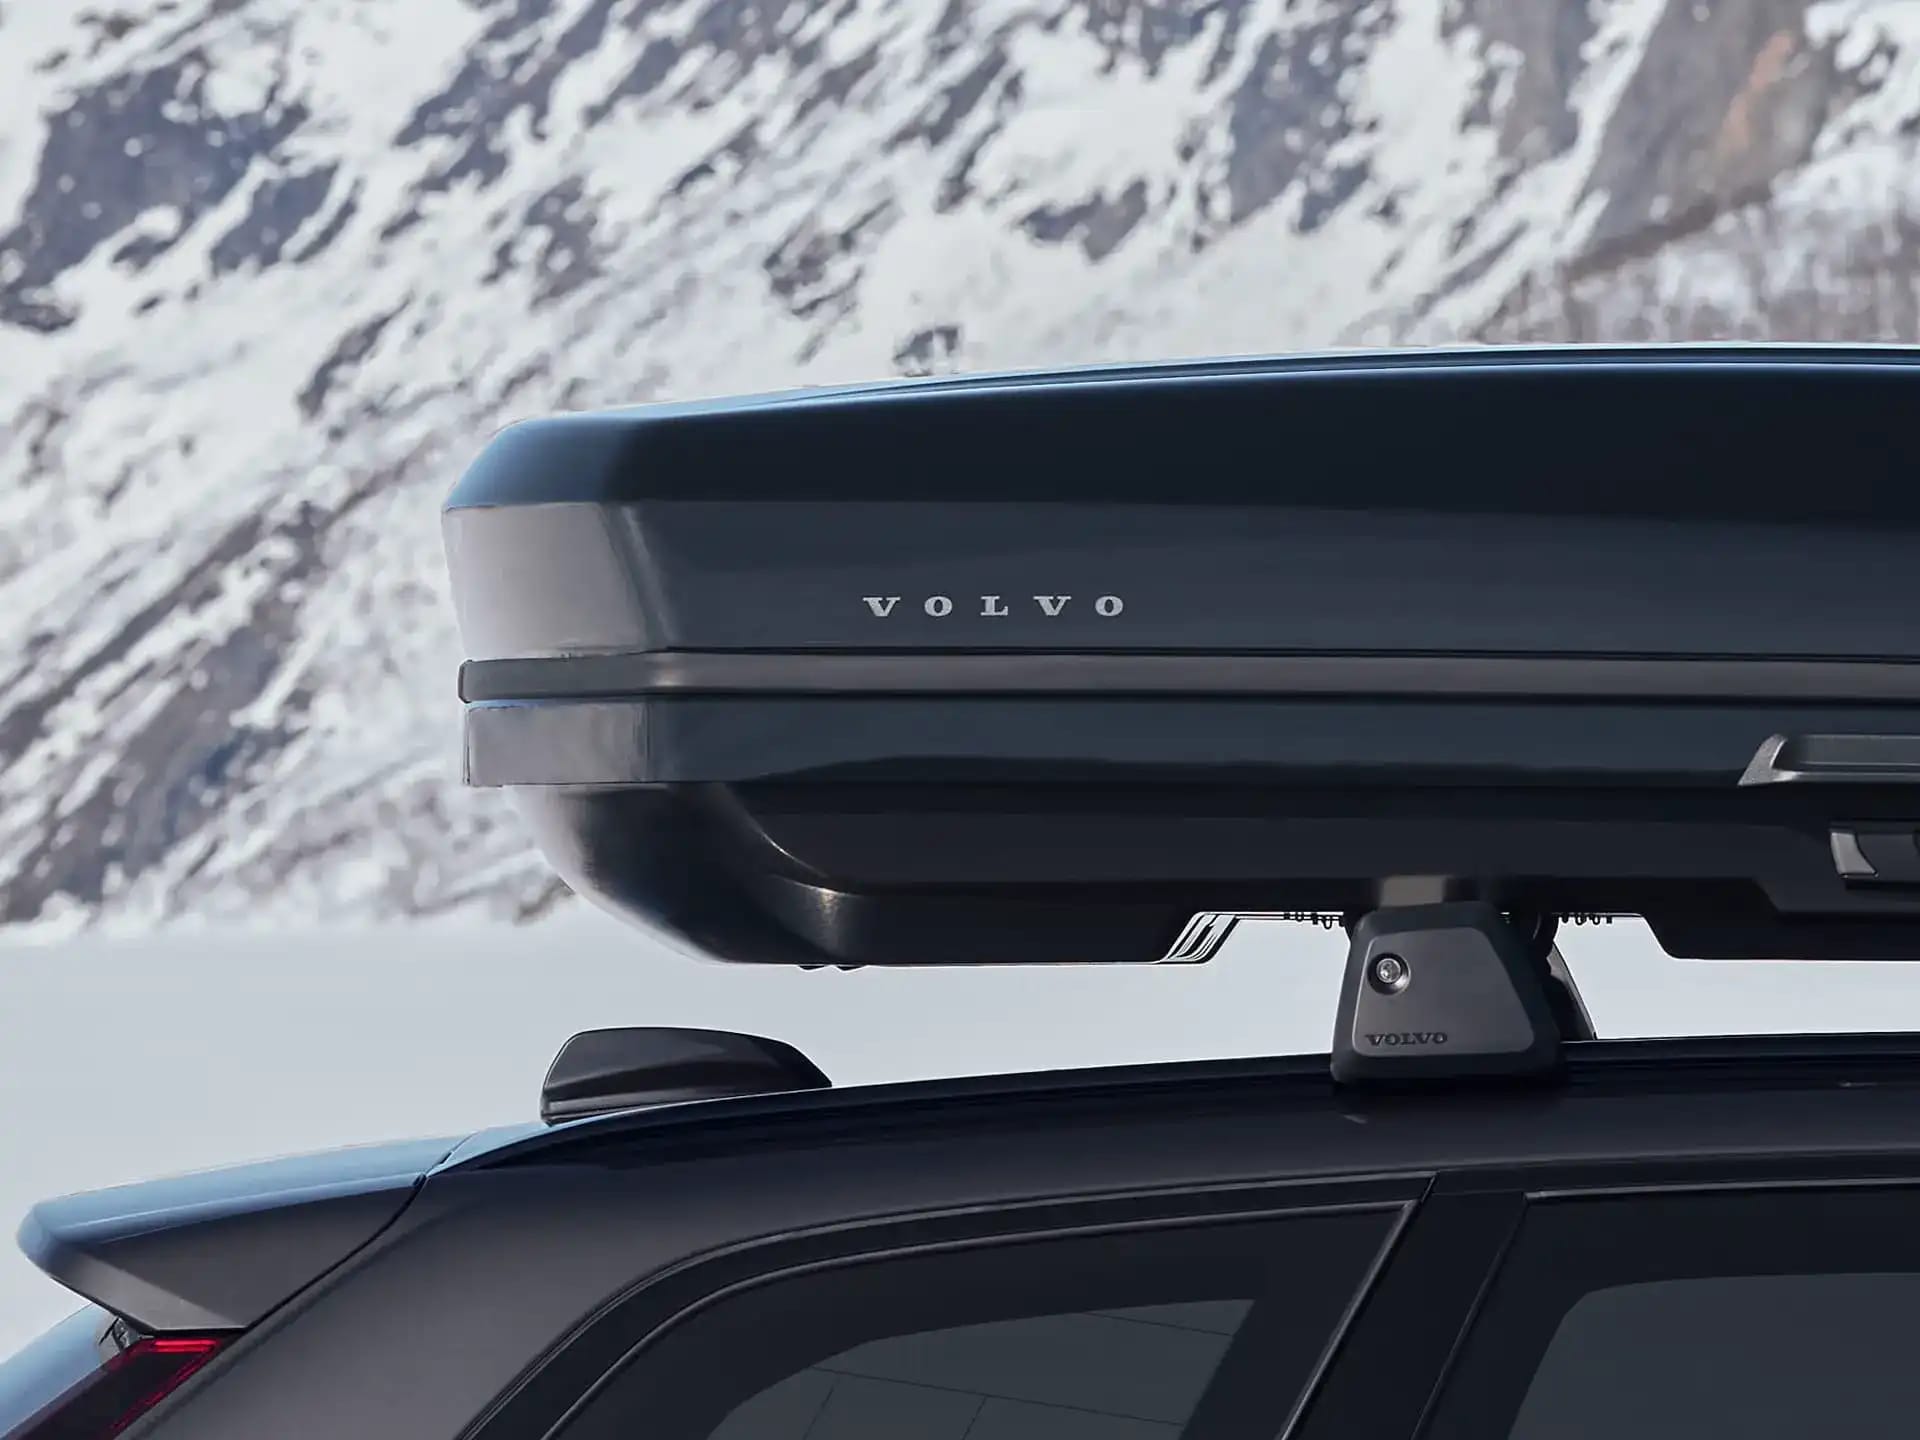 Značkový střešní box Volvo na střeše vozu Volvo zaparkovaného v zimní krajině.